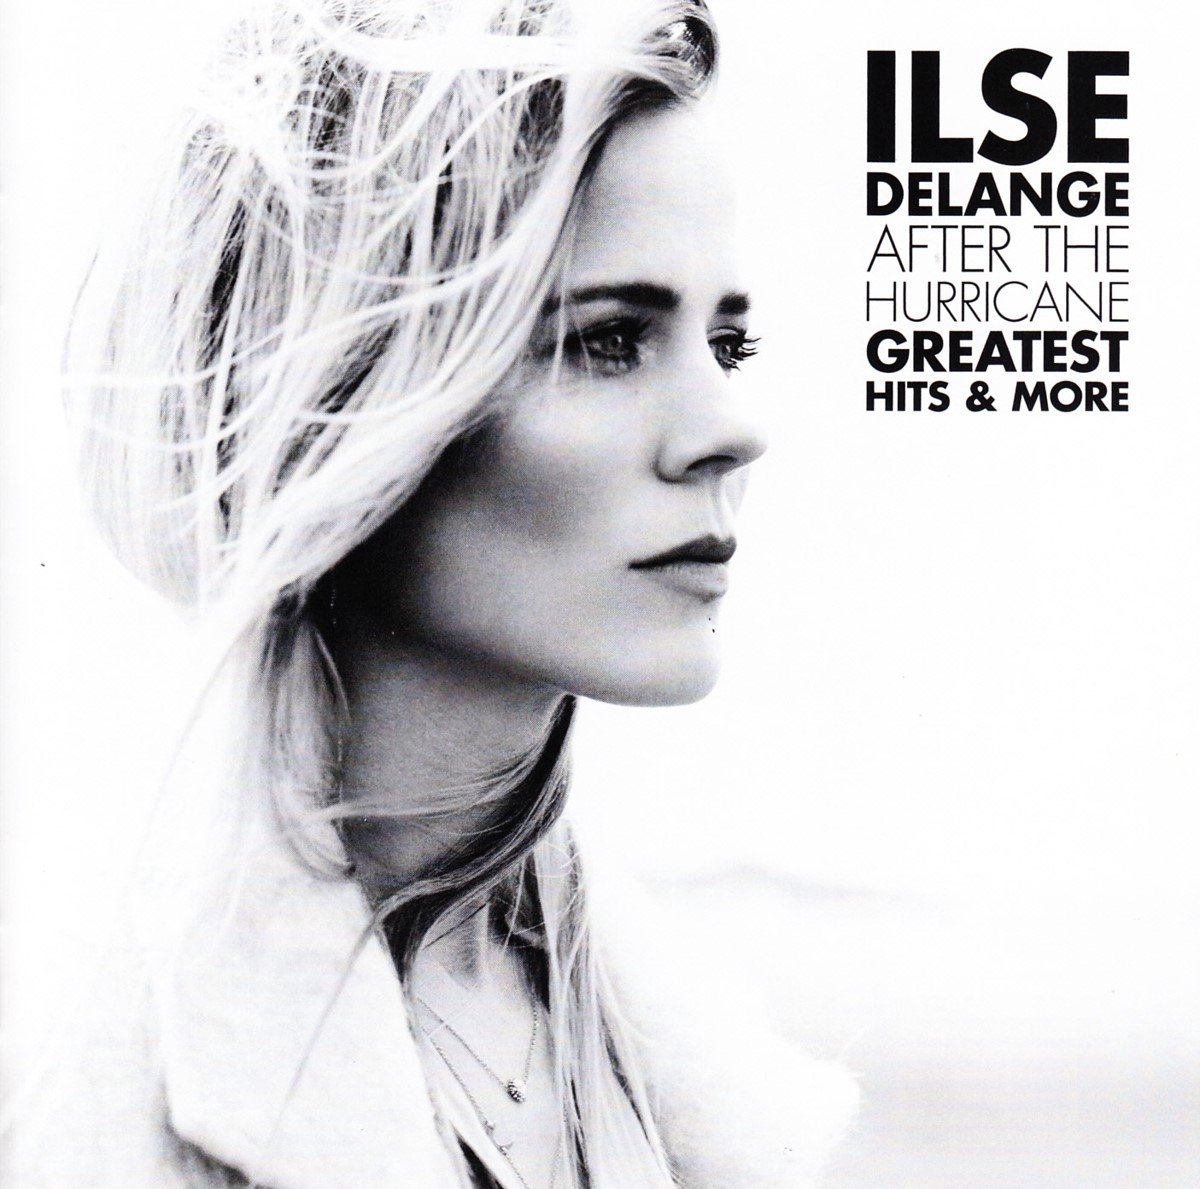 Ilse Delange - After The Hurricane - Greatest Hits (CD) - Ilse DeLange